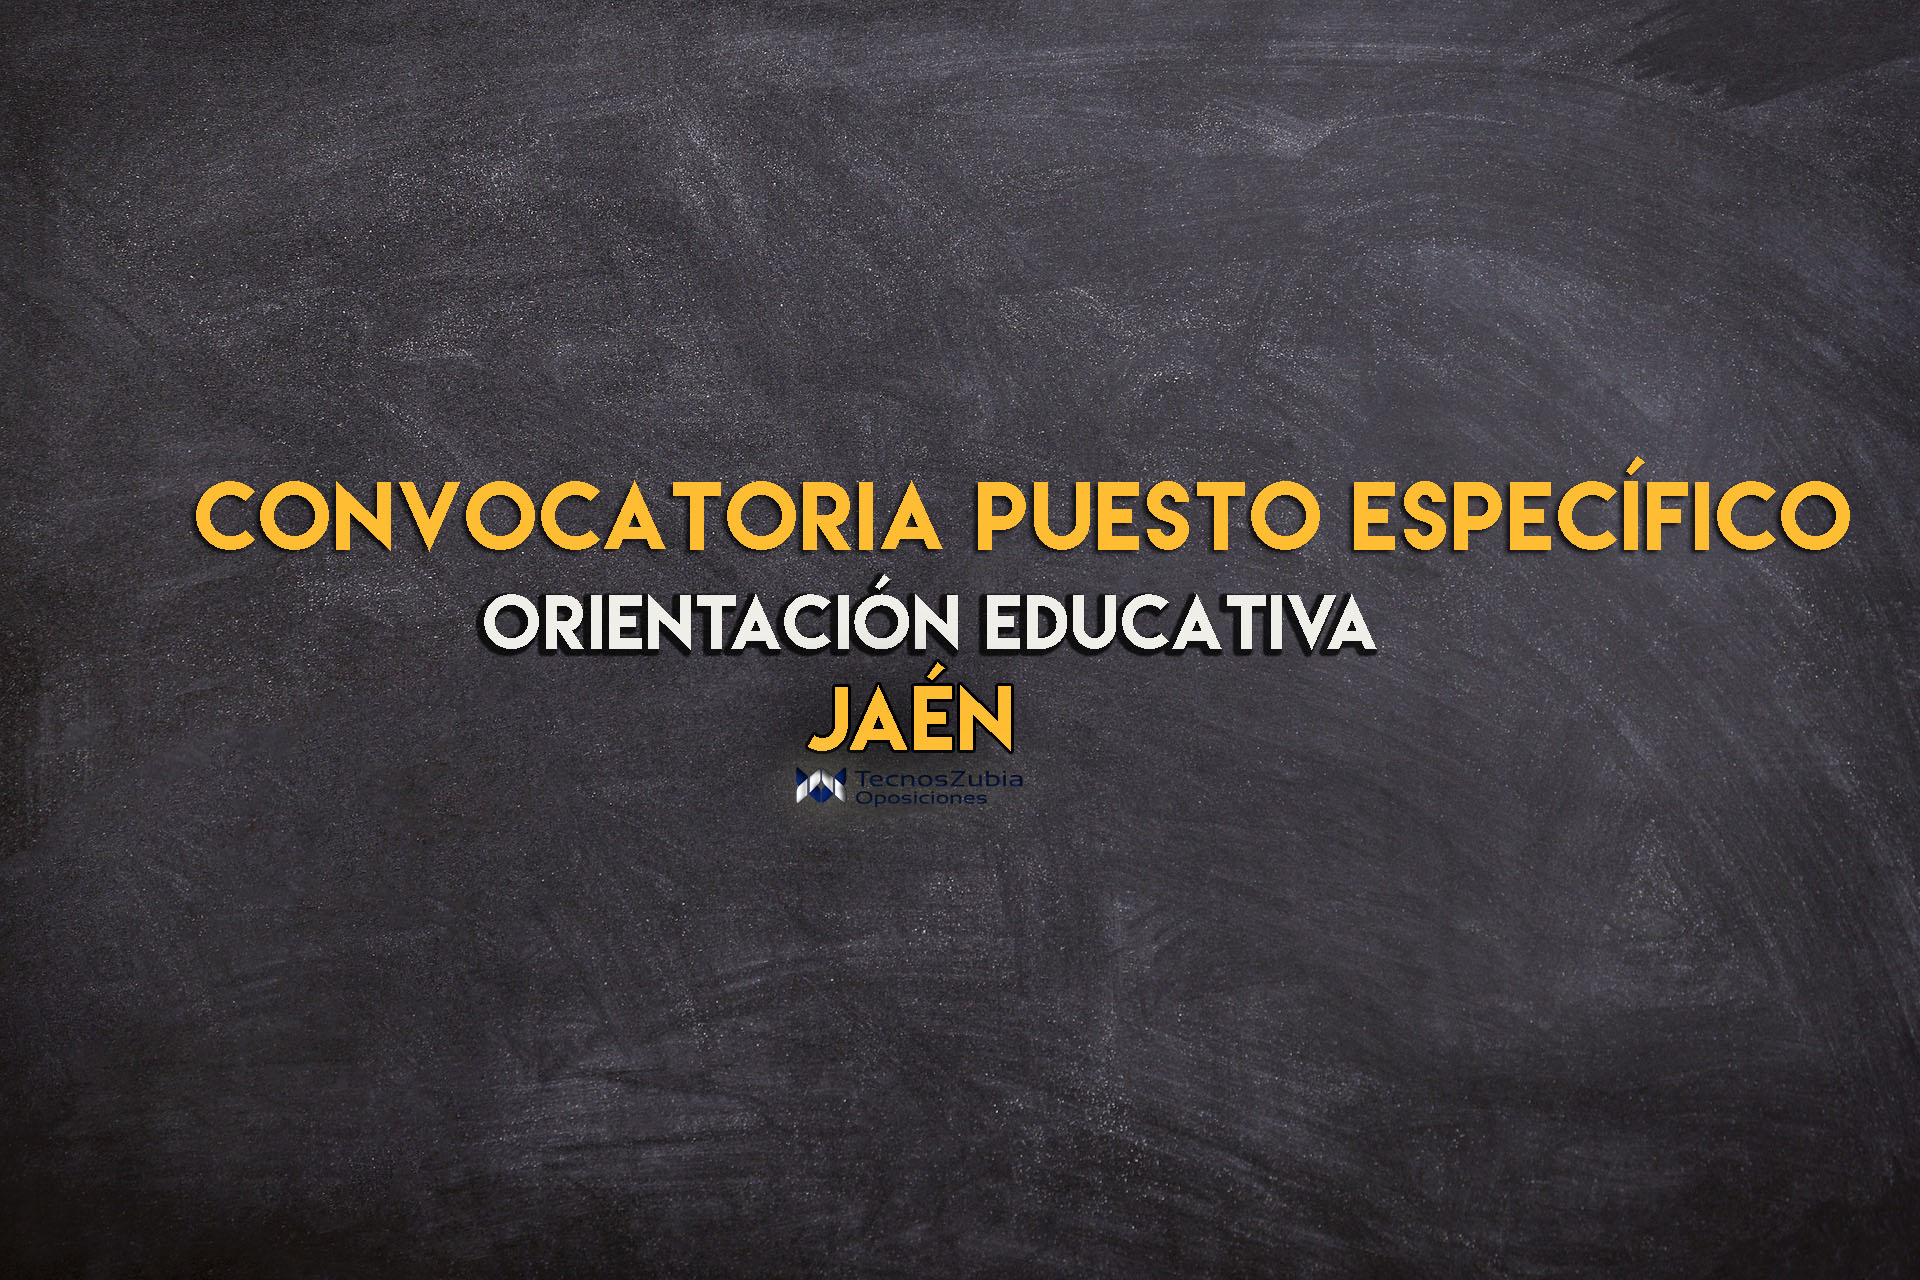 Convocatoria orientación educativa Jaén